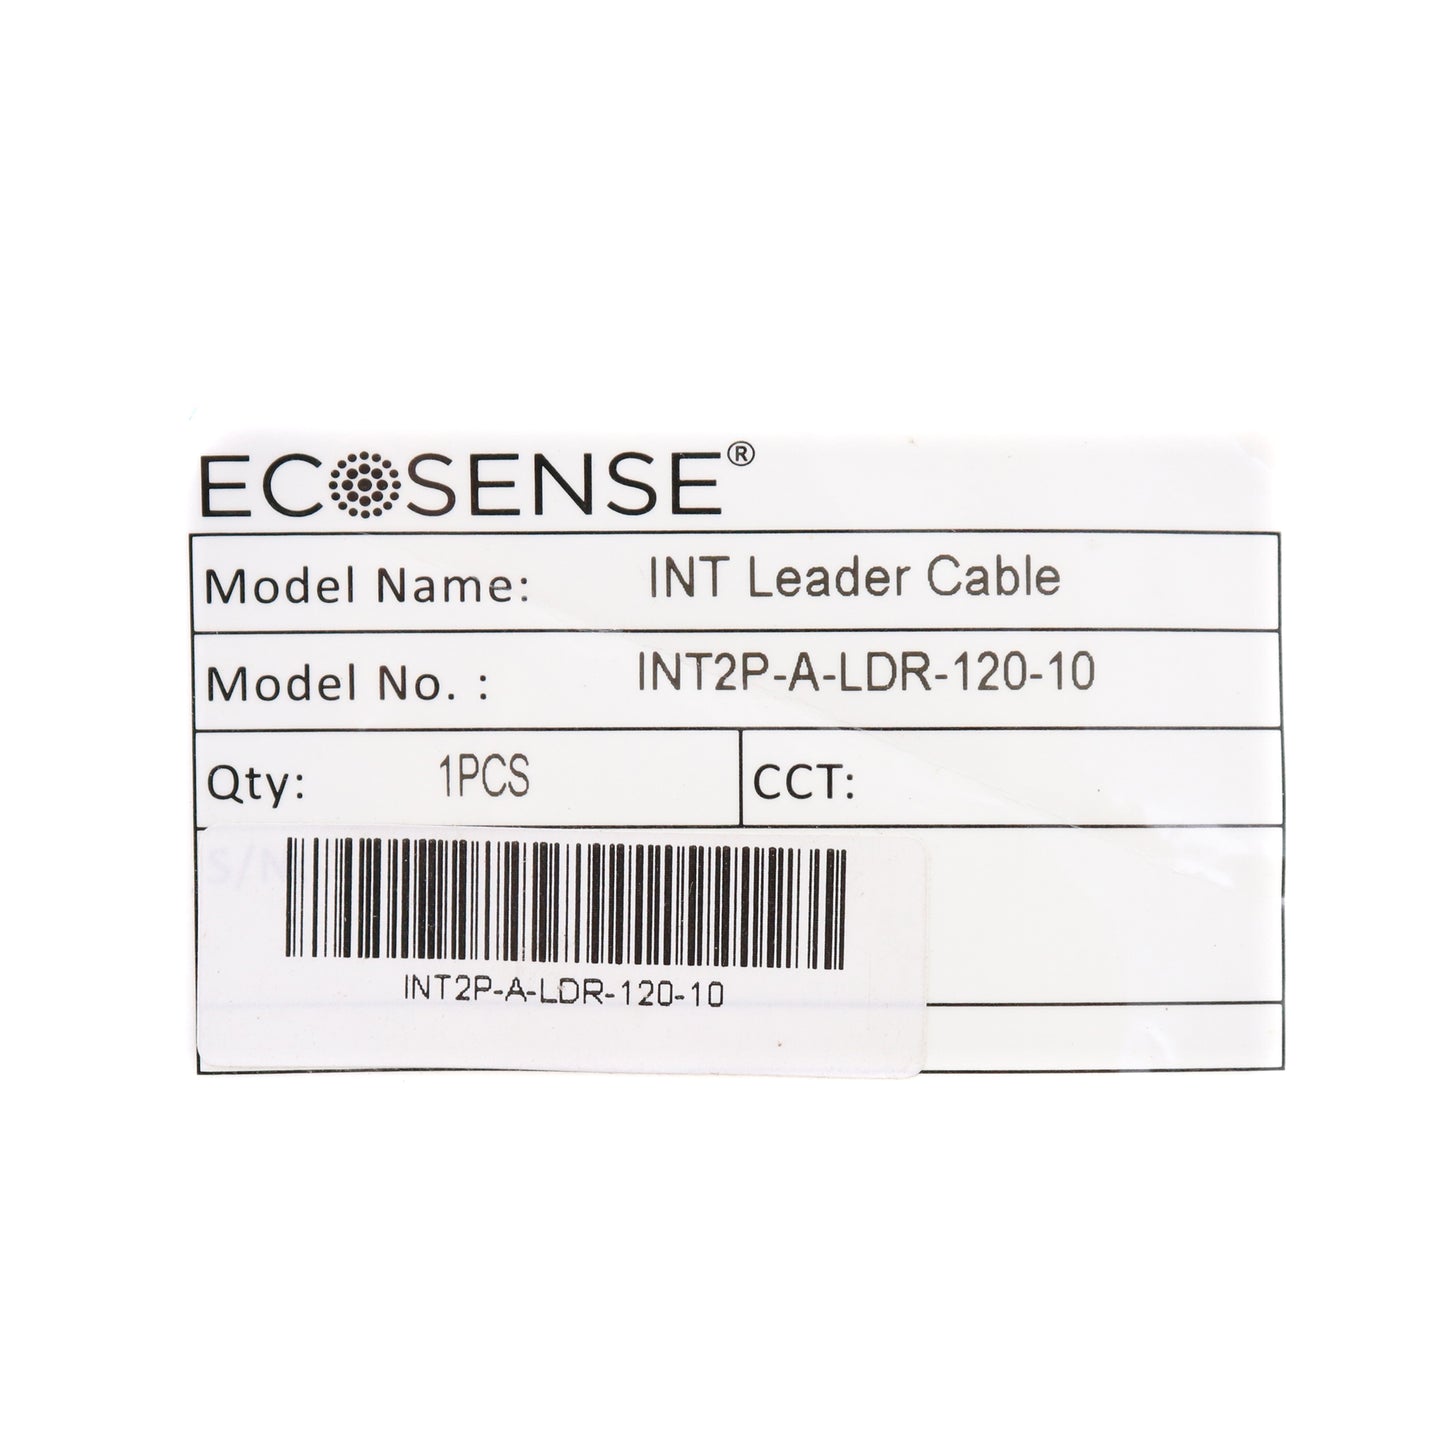 Ecosense INT2P-A-LDR-120-10